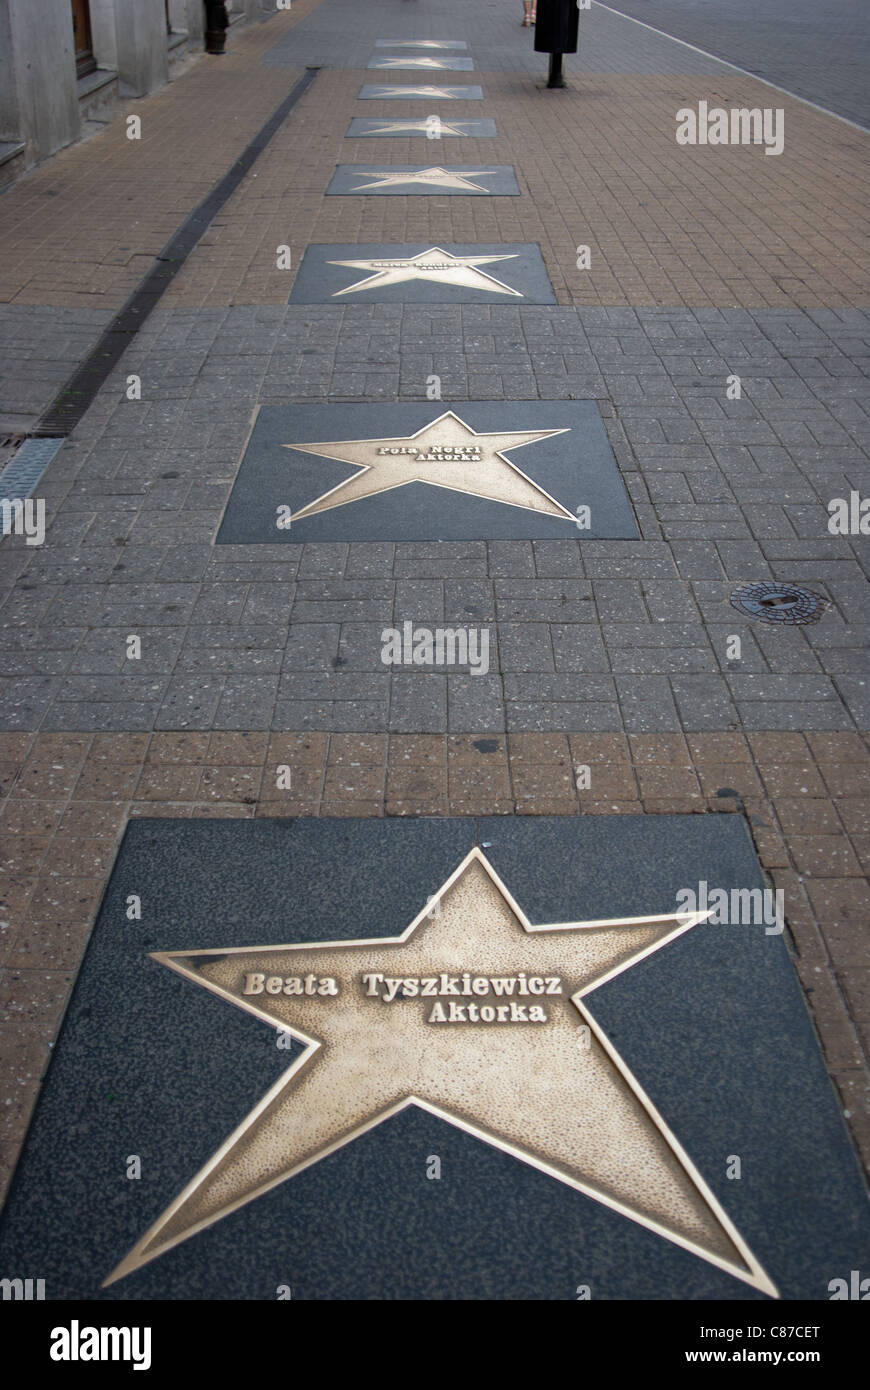 Étoile de célèbres réalisateurs et acteurs dans la ville polonaise de Lodz sur la plus longue rue appelée rue Piotrkowska Banque D'Images